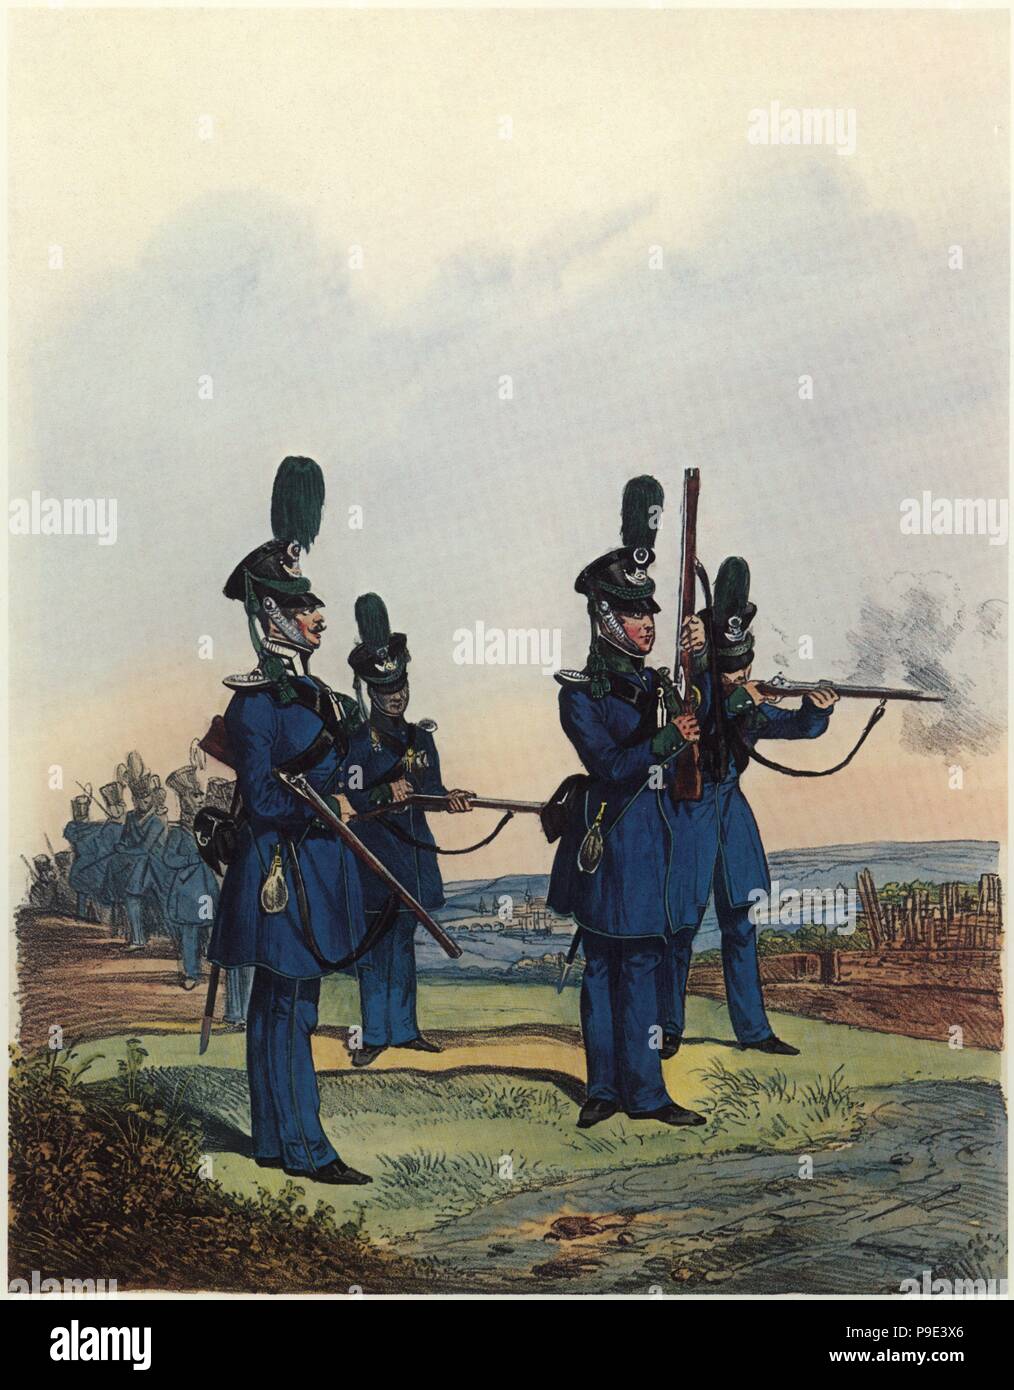 Alemania. Reino de Bayern. Uniformes del siglo XIX. Soldado de un regimiento de infantería. Stock Photo